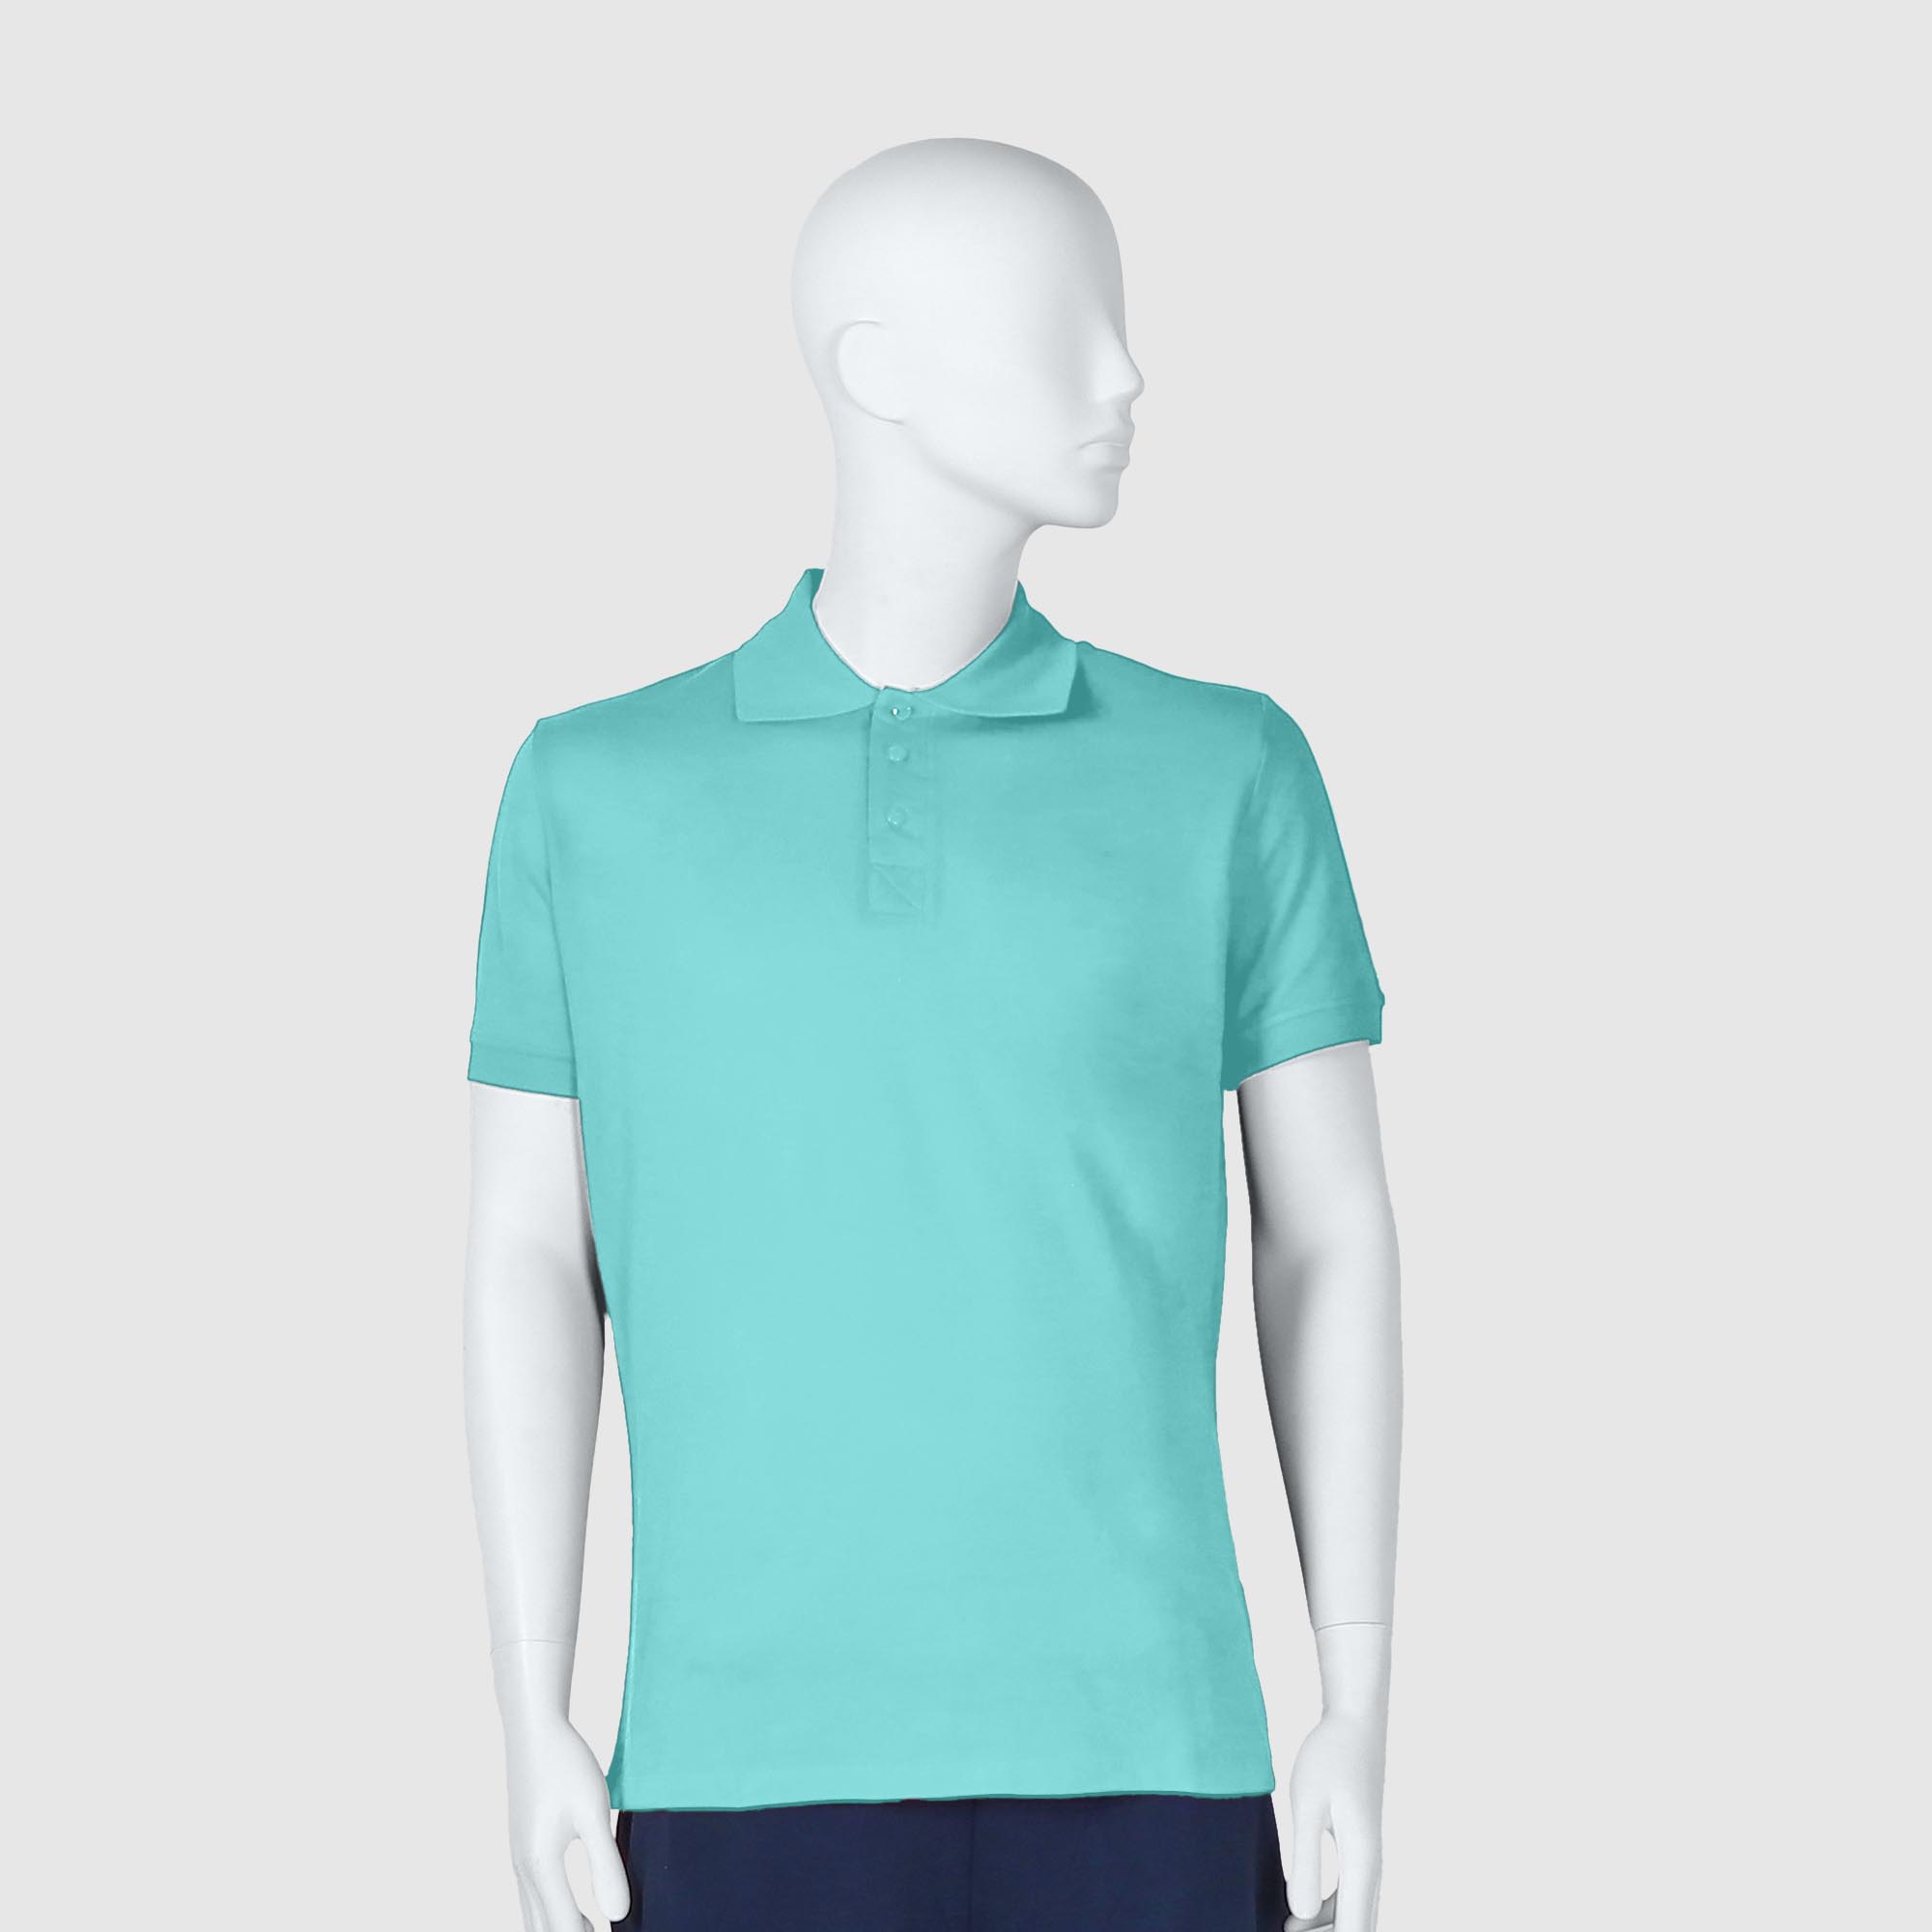 Мужская футболка-поло Diva Teks лазурная (DTD-12), цвет лазурный, размер 46-48